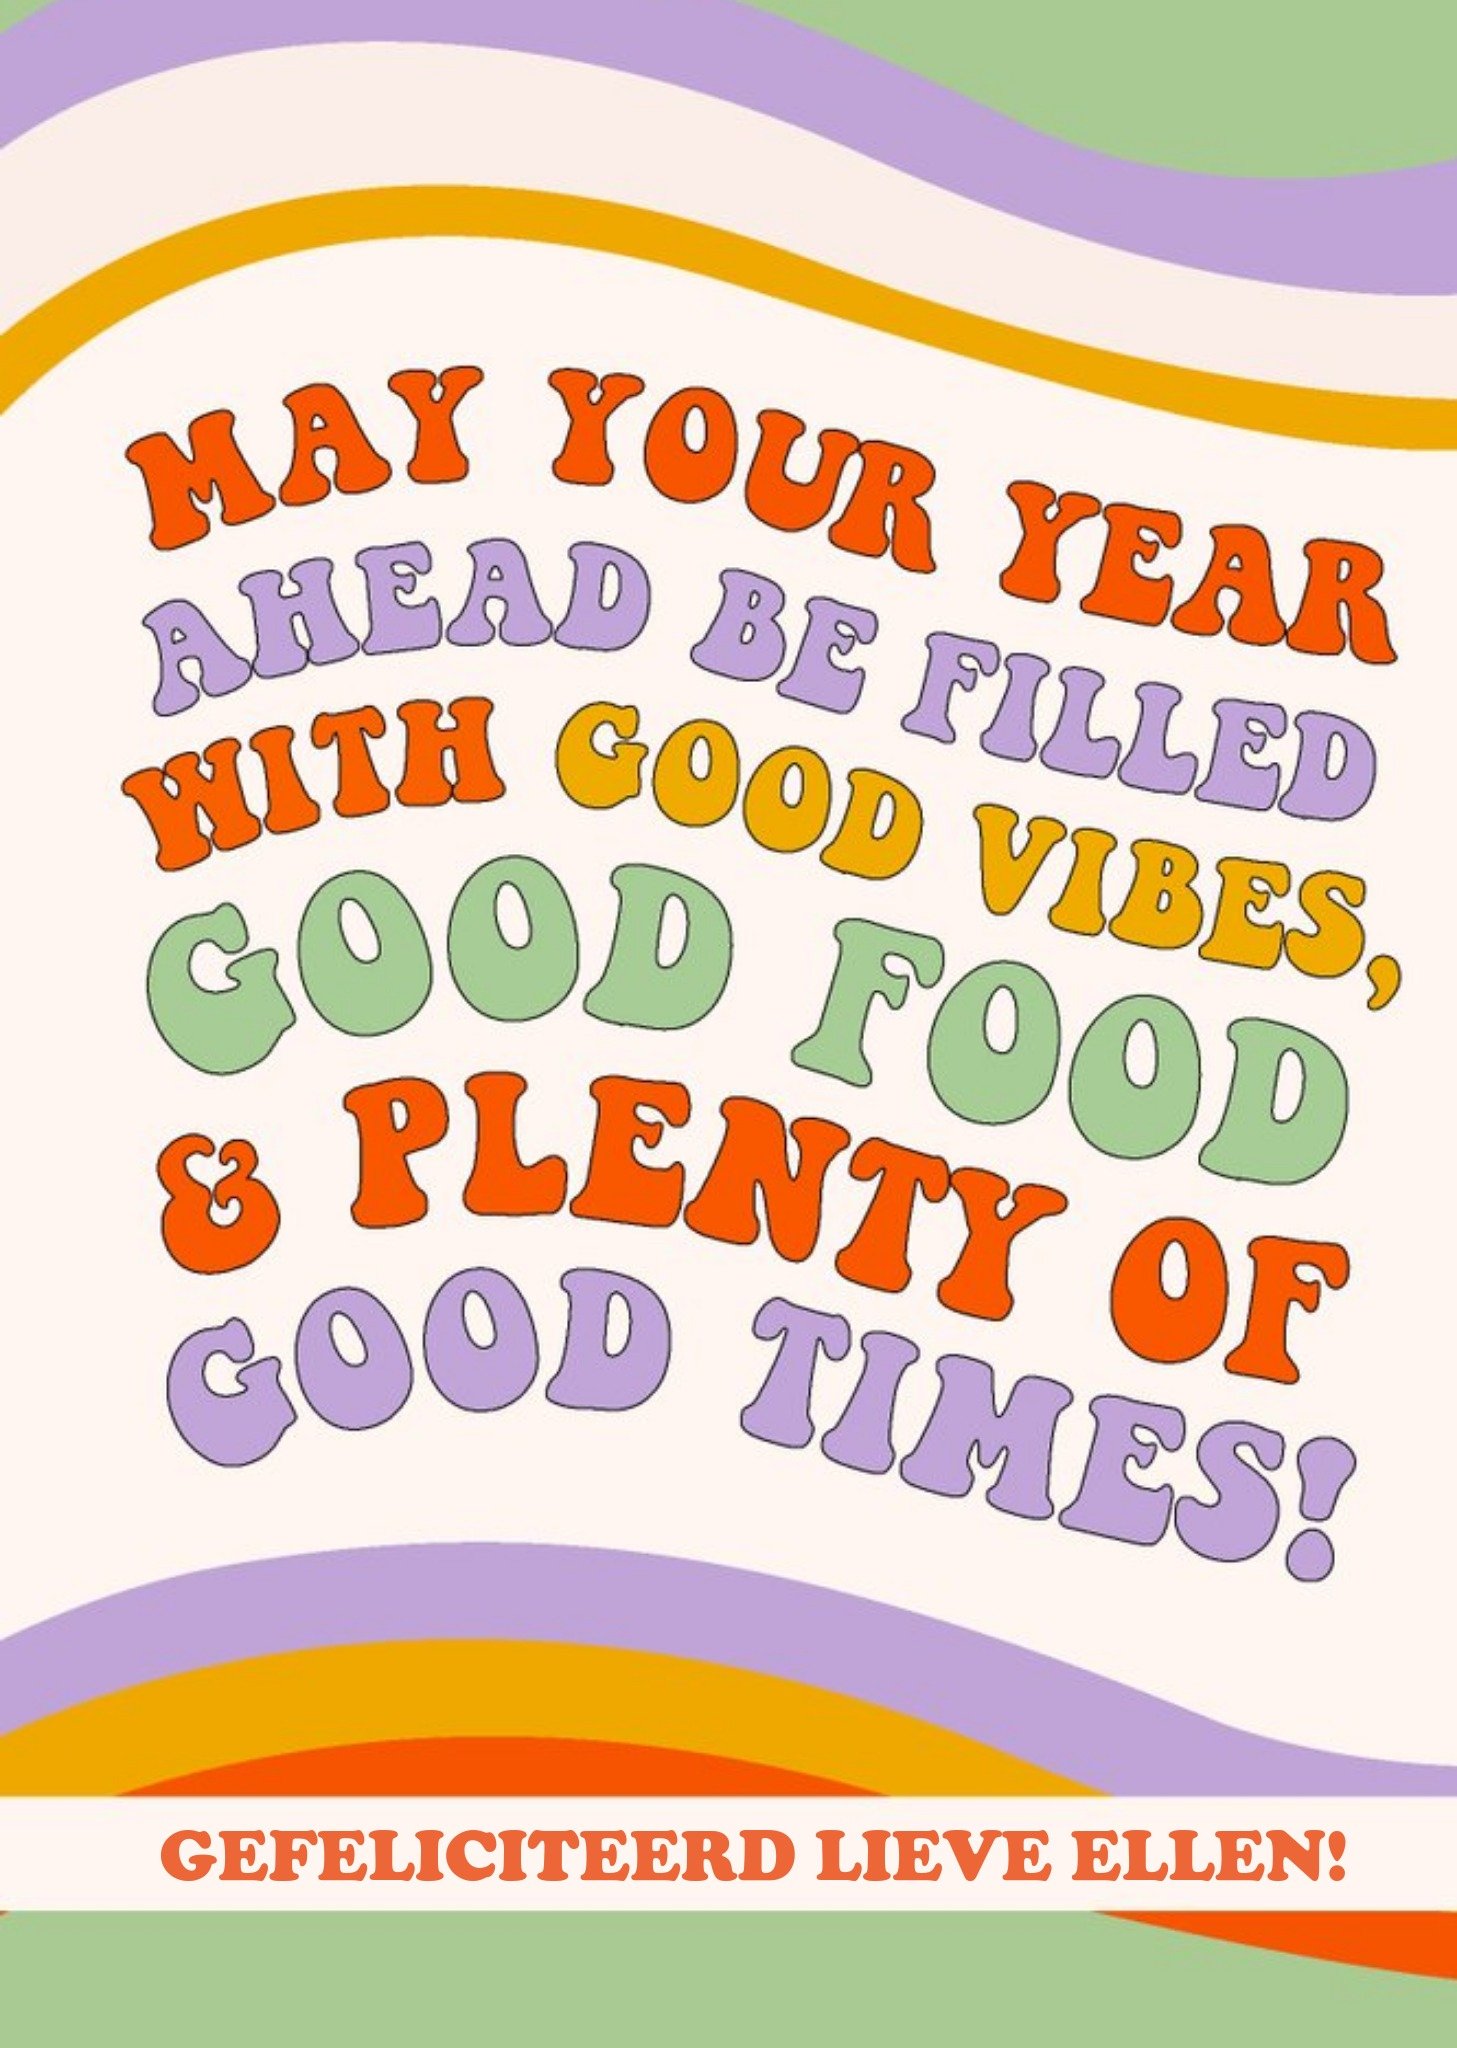 Verjaardagskaart - Good vibes, good food and good times